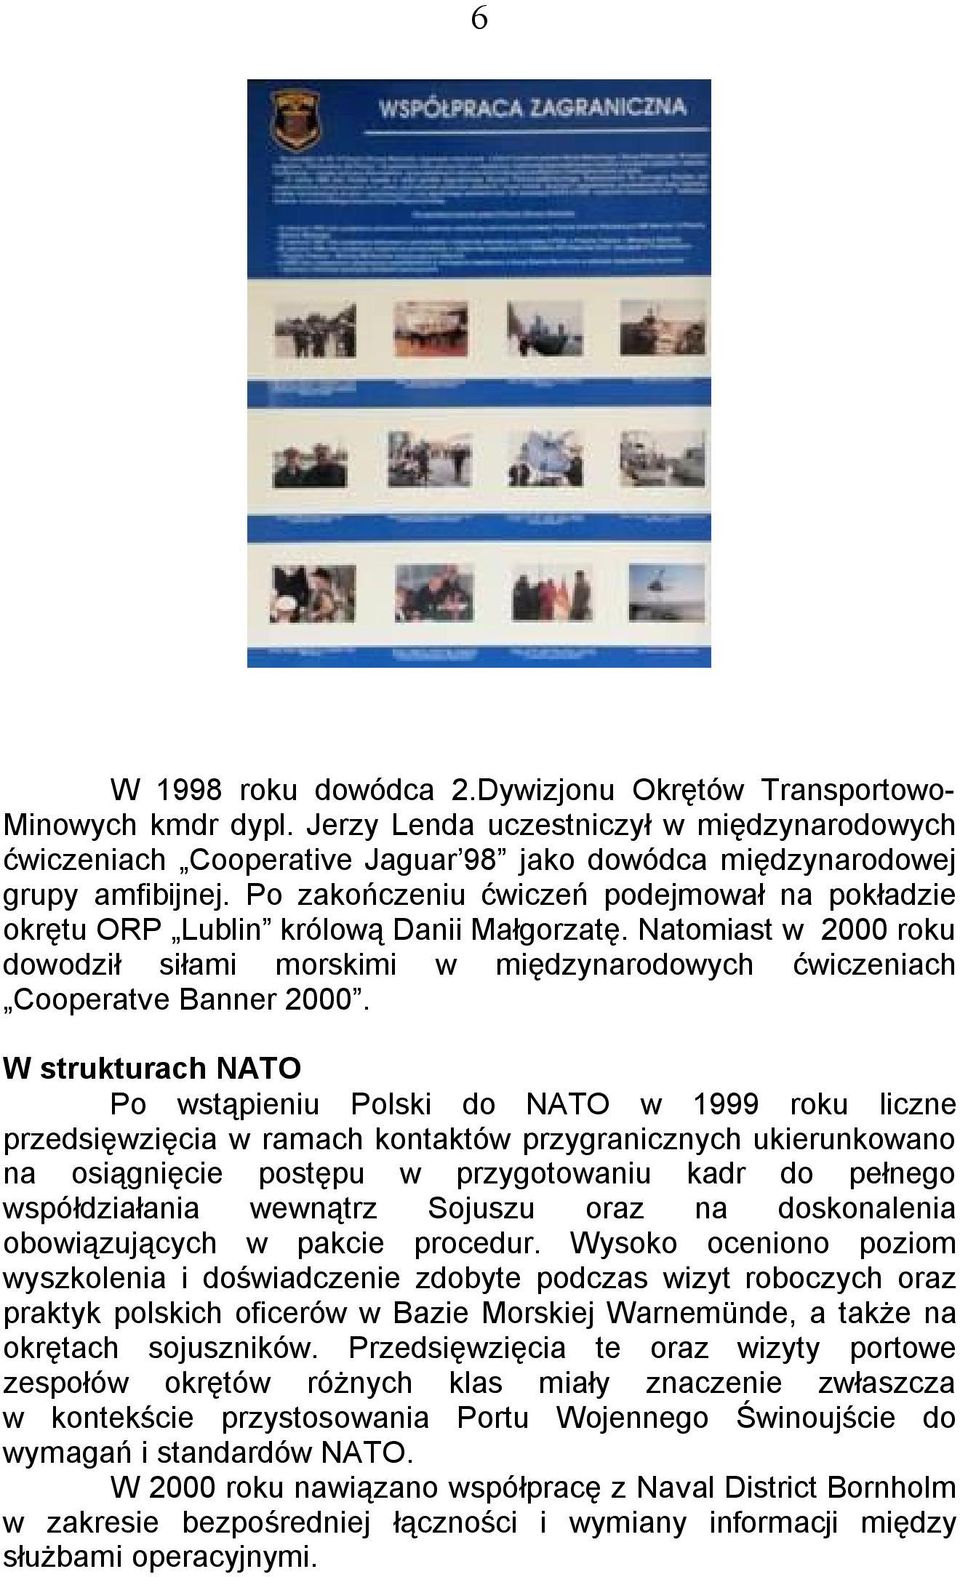 W strukturach NATO Po wstąpieniu Polski do NATO w 1999 roku liczne przedsięwzięcia w ramach kontaktów przygranicznych ukierunkowano na osiągnięcie postępu w przygotowaniu kadr do pełnego